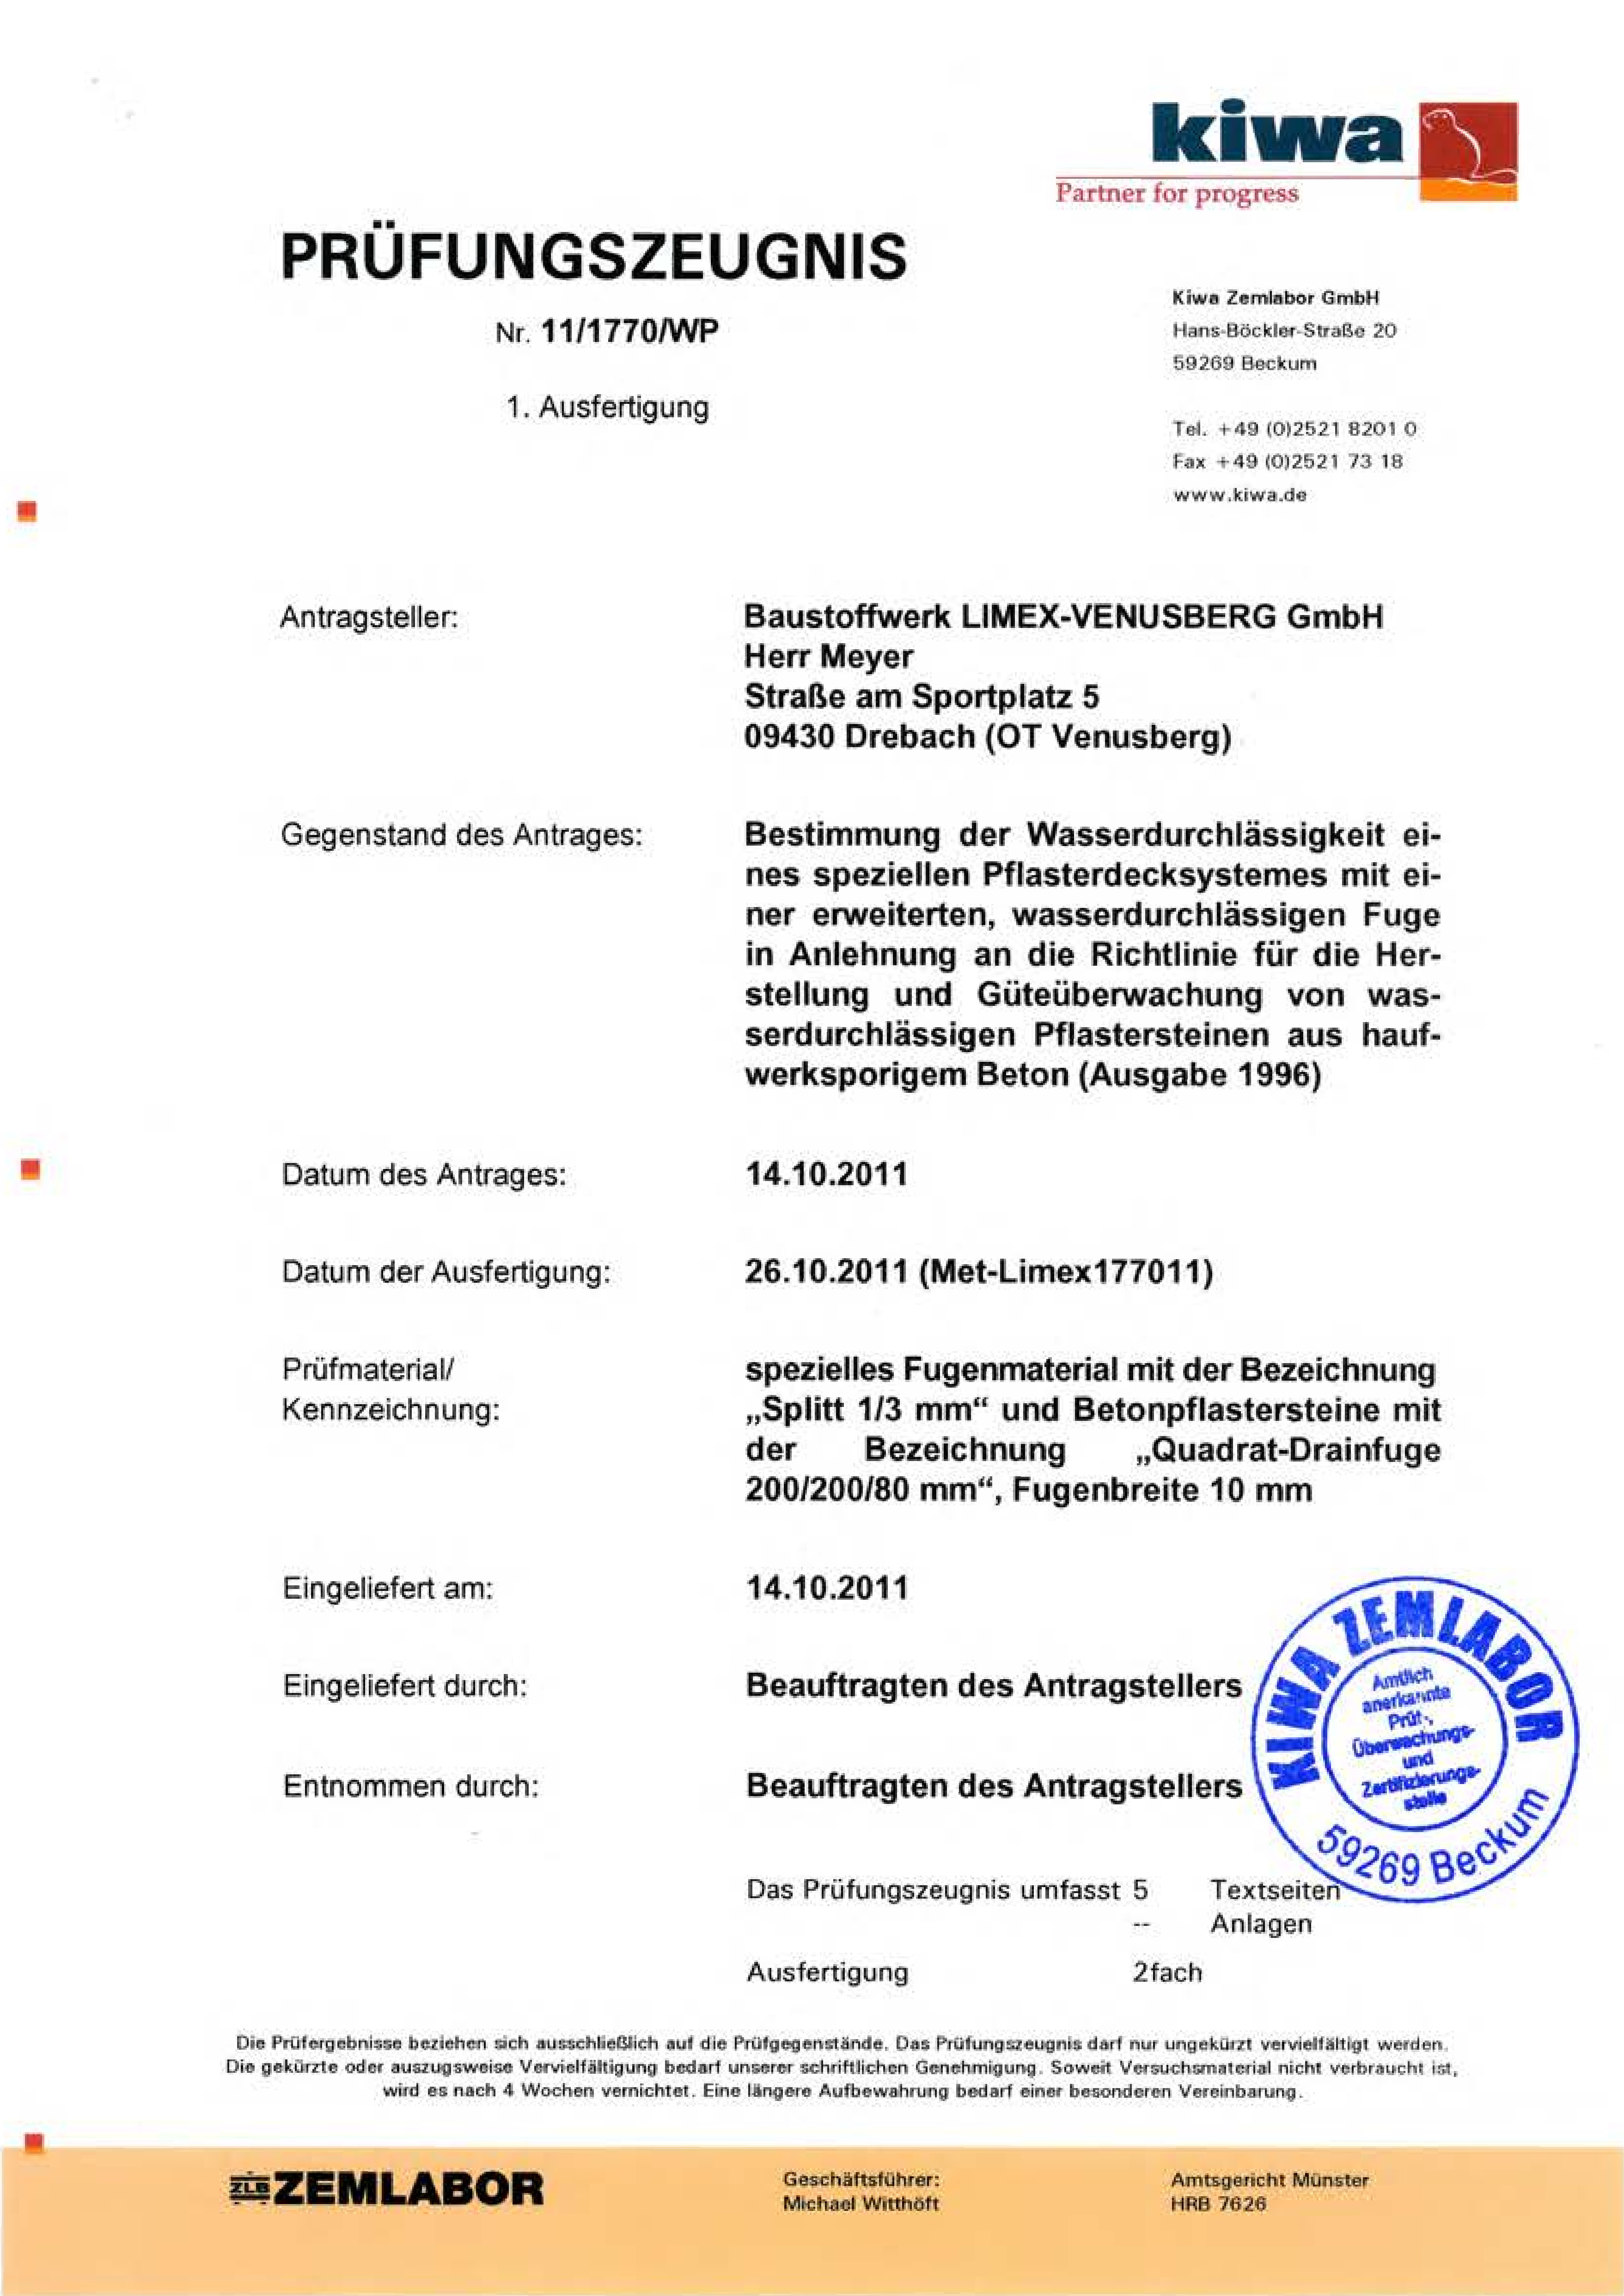 LIMEX Infocenter Pruefzeugnis 11 1770 WP Quadrat Drainfugenpflaster pdf